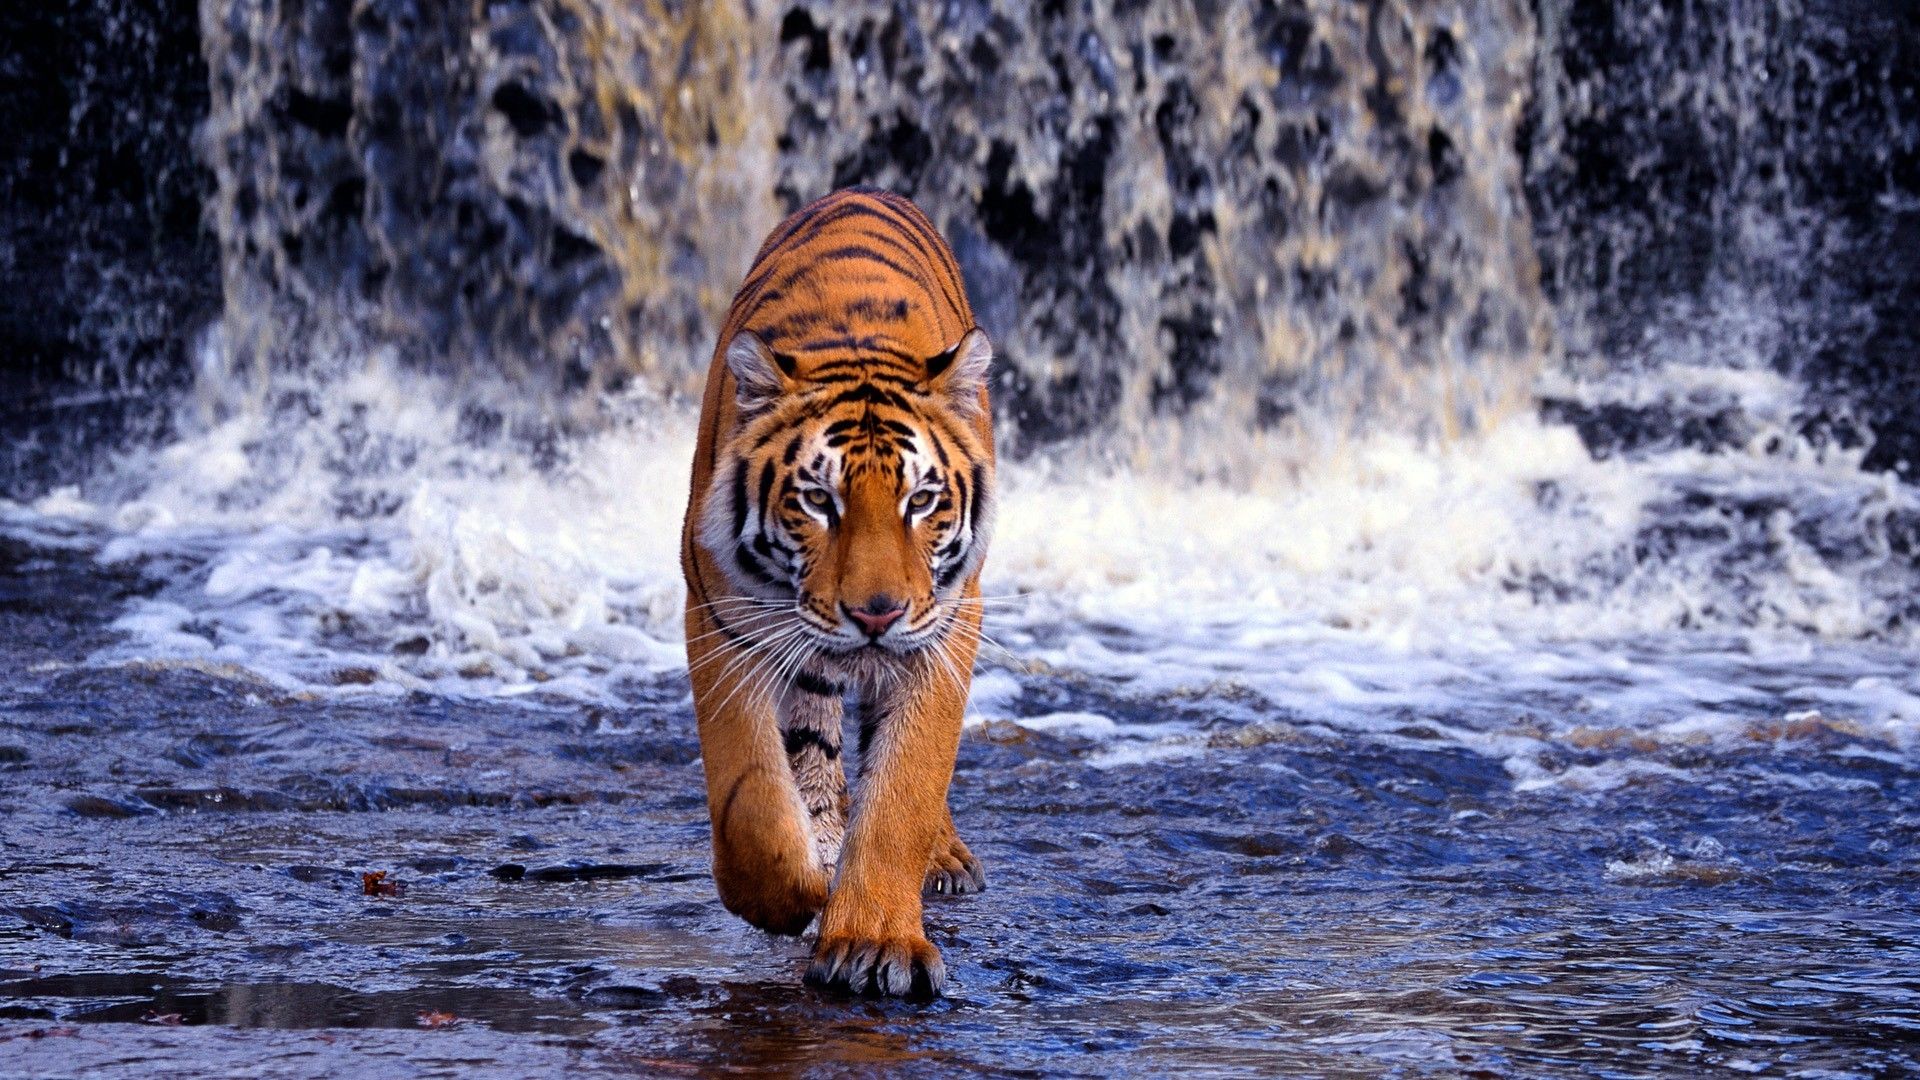 Sharanbaswa On Walks Tiger Wallpaper Image Pet